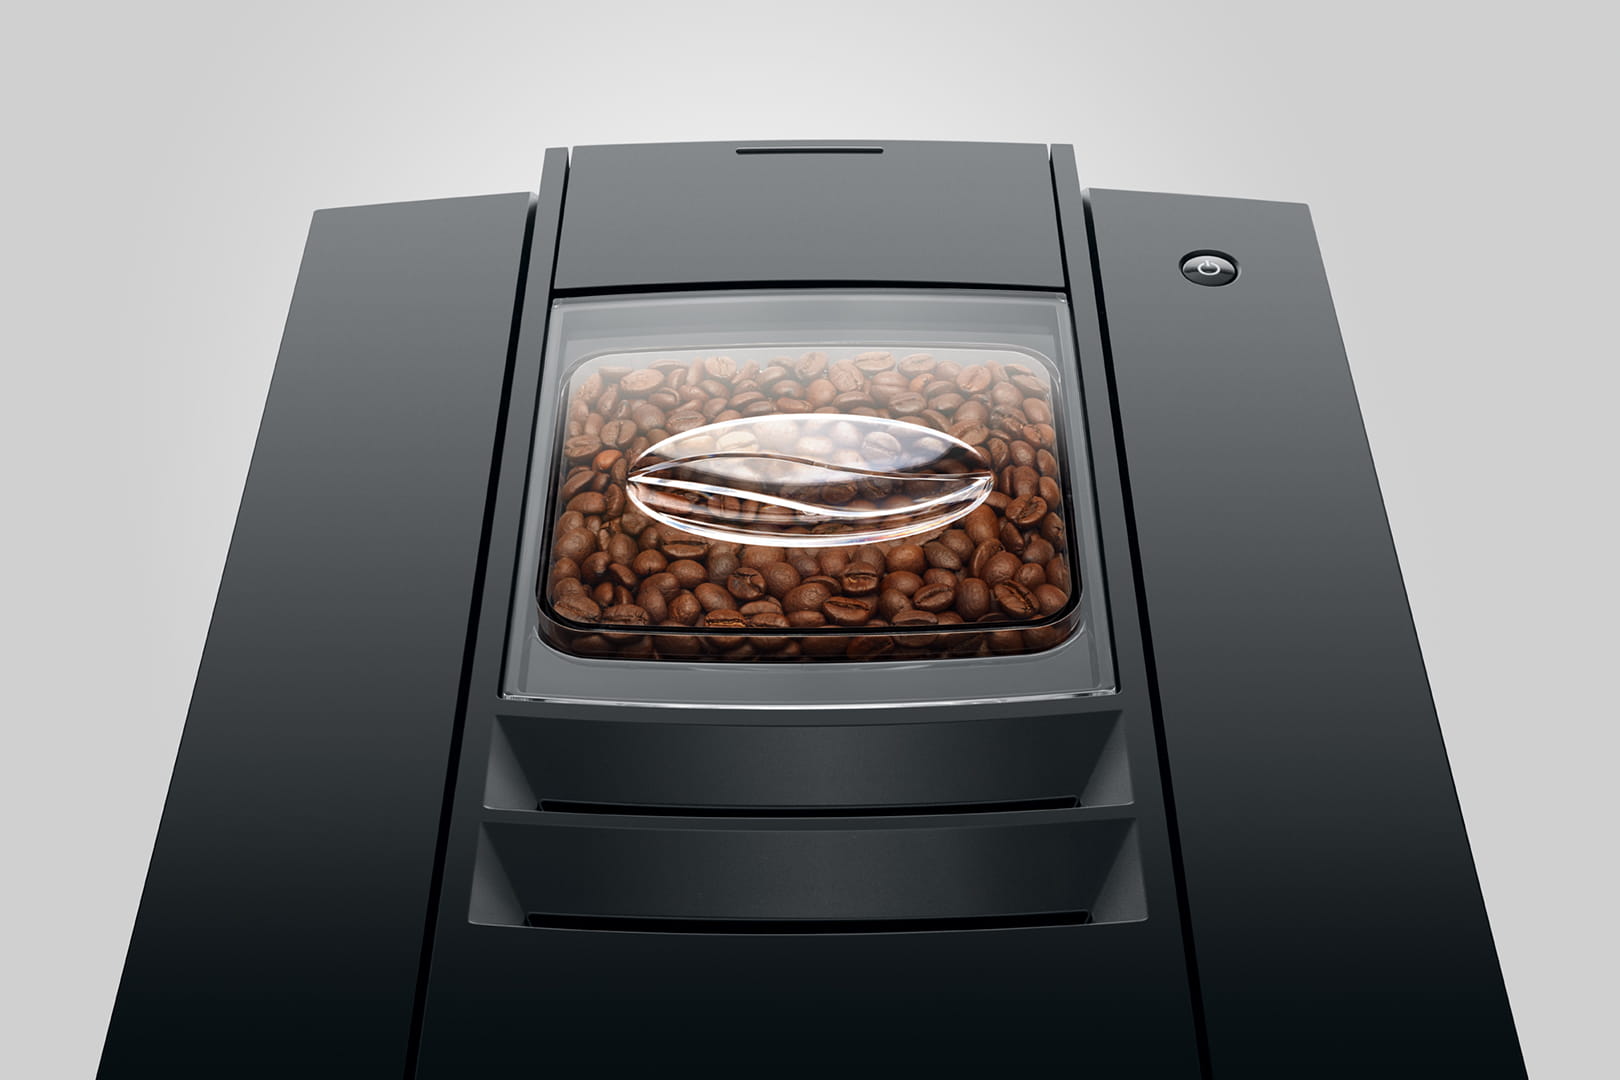 Jura E4 Piano Black : votre nouvelle machine à café